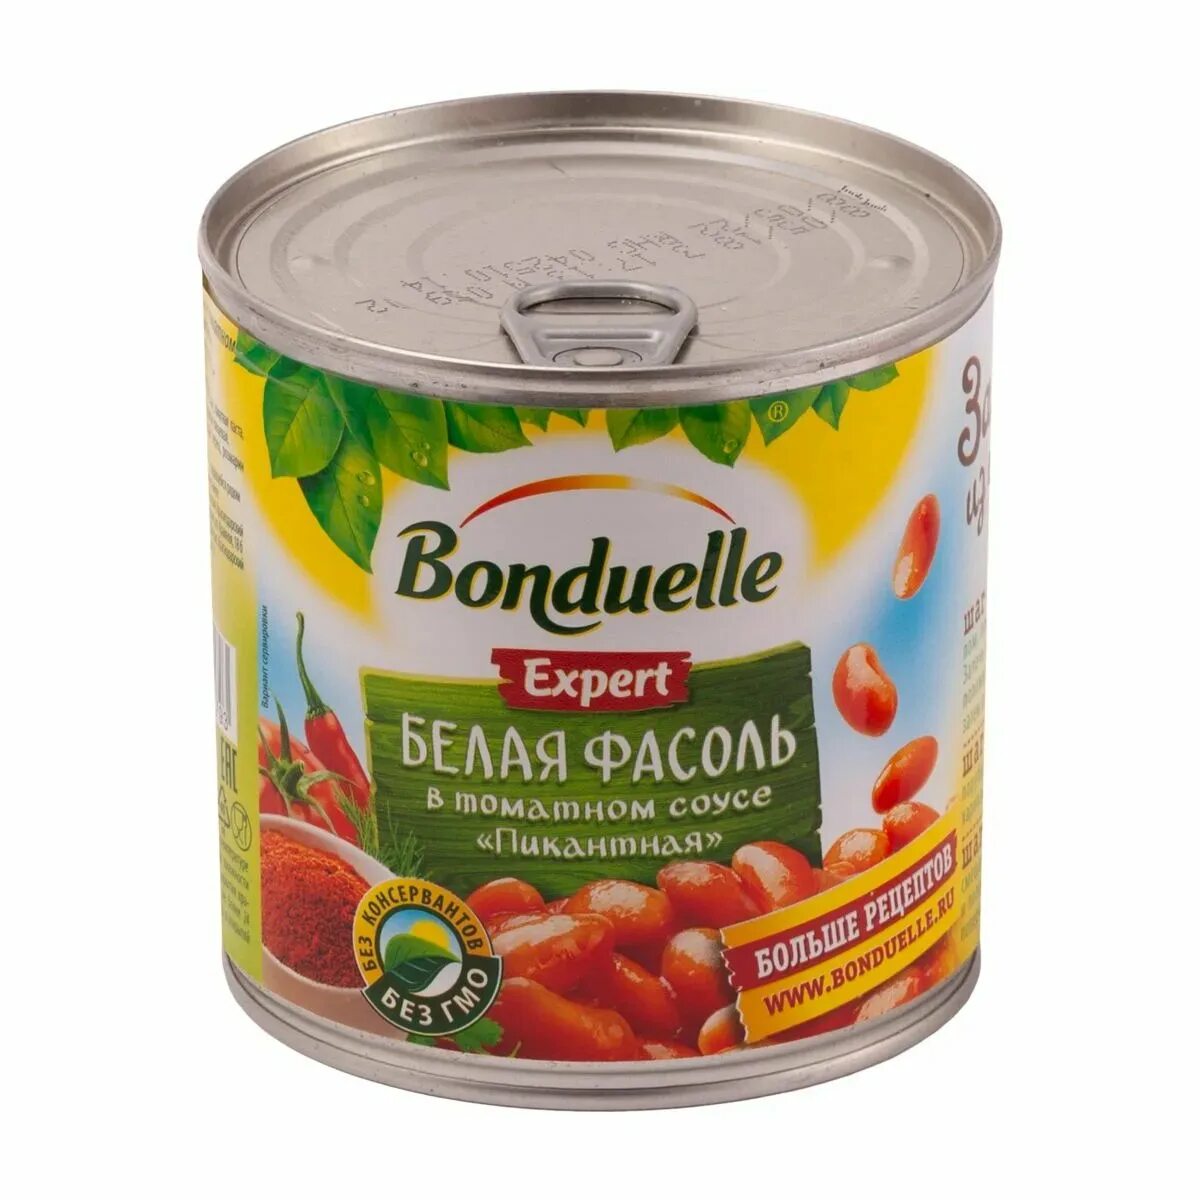 Фасоль в томатном соусе купить. Фасоль Bonduelle красная Чили 425мл. Фасоль 425 Бондюэль белая в томатном соусе. Фасоль Бондюэль белая в том соусе 430г/425мл ж/б. Bonduelle фасоль Чили 425мл(Бондюэль):12.